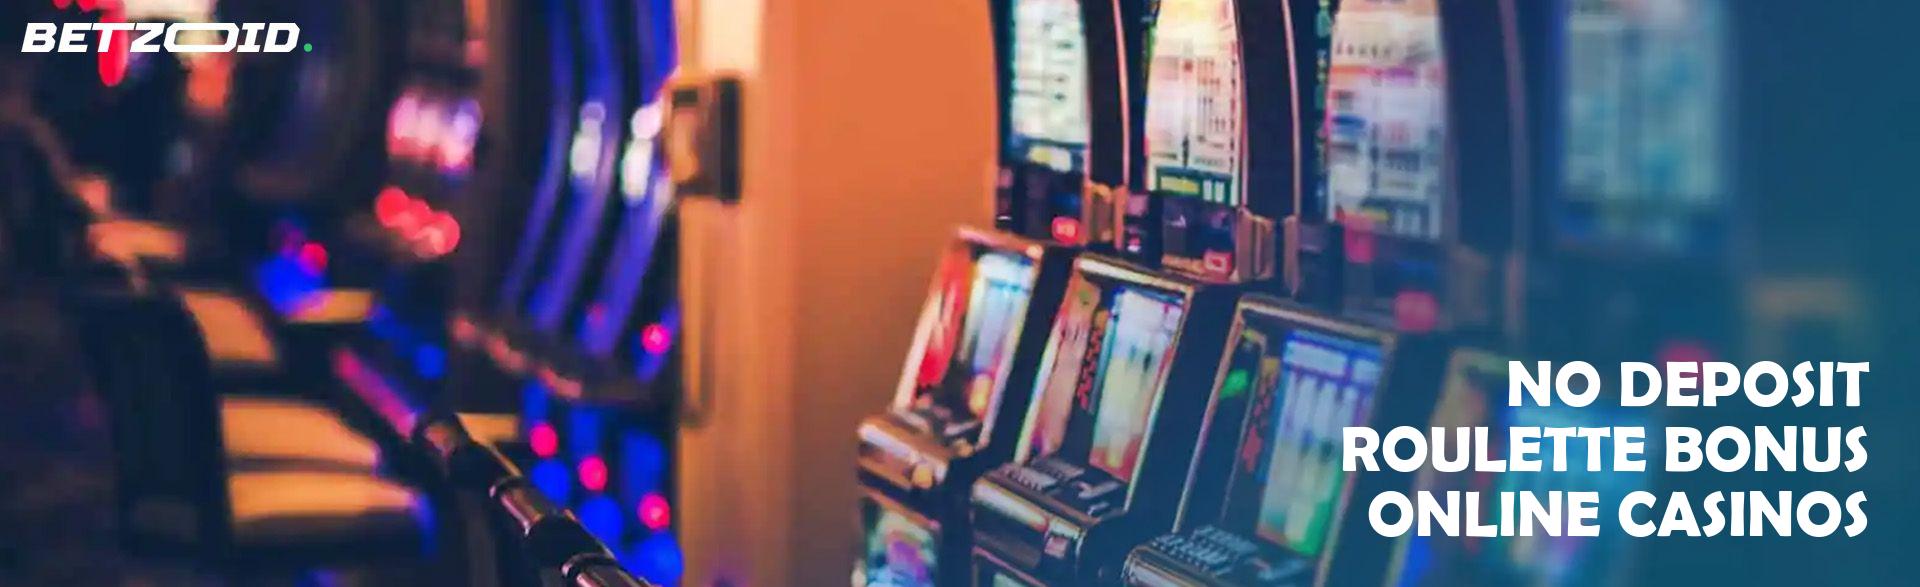 No Deposit Roulette Bonus Online Casinos.